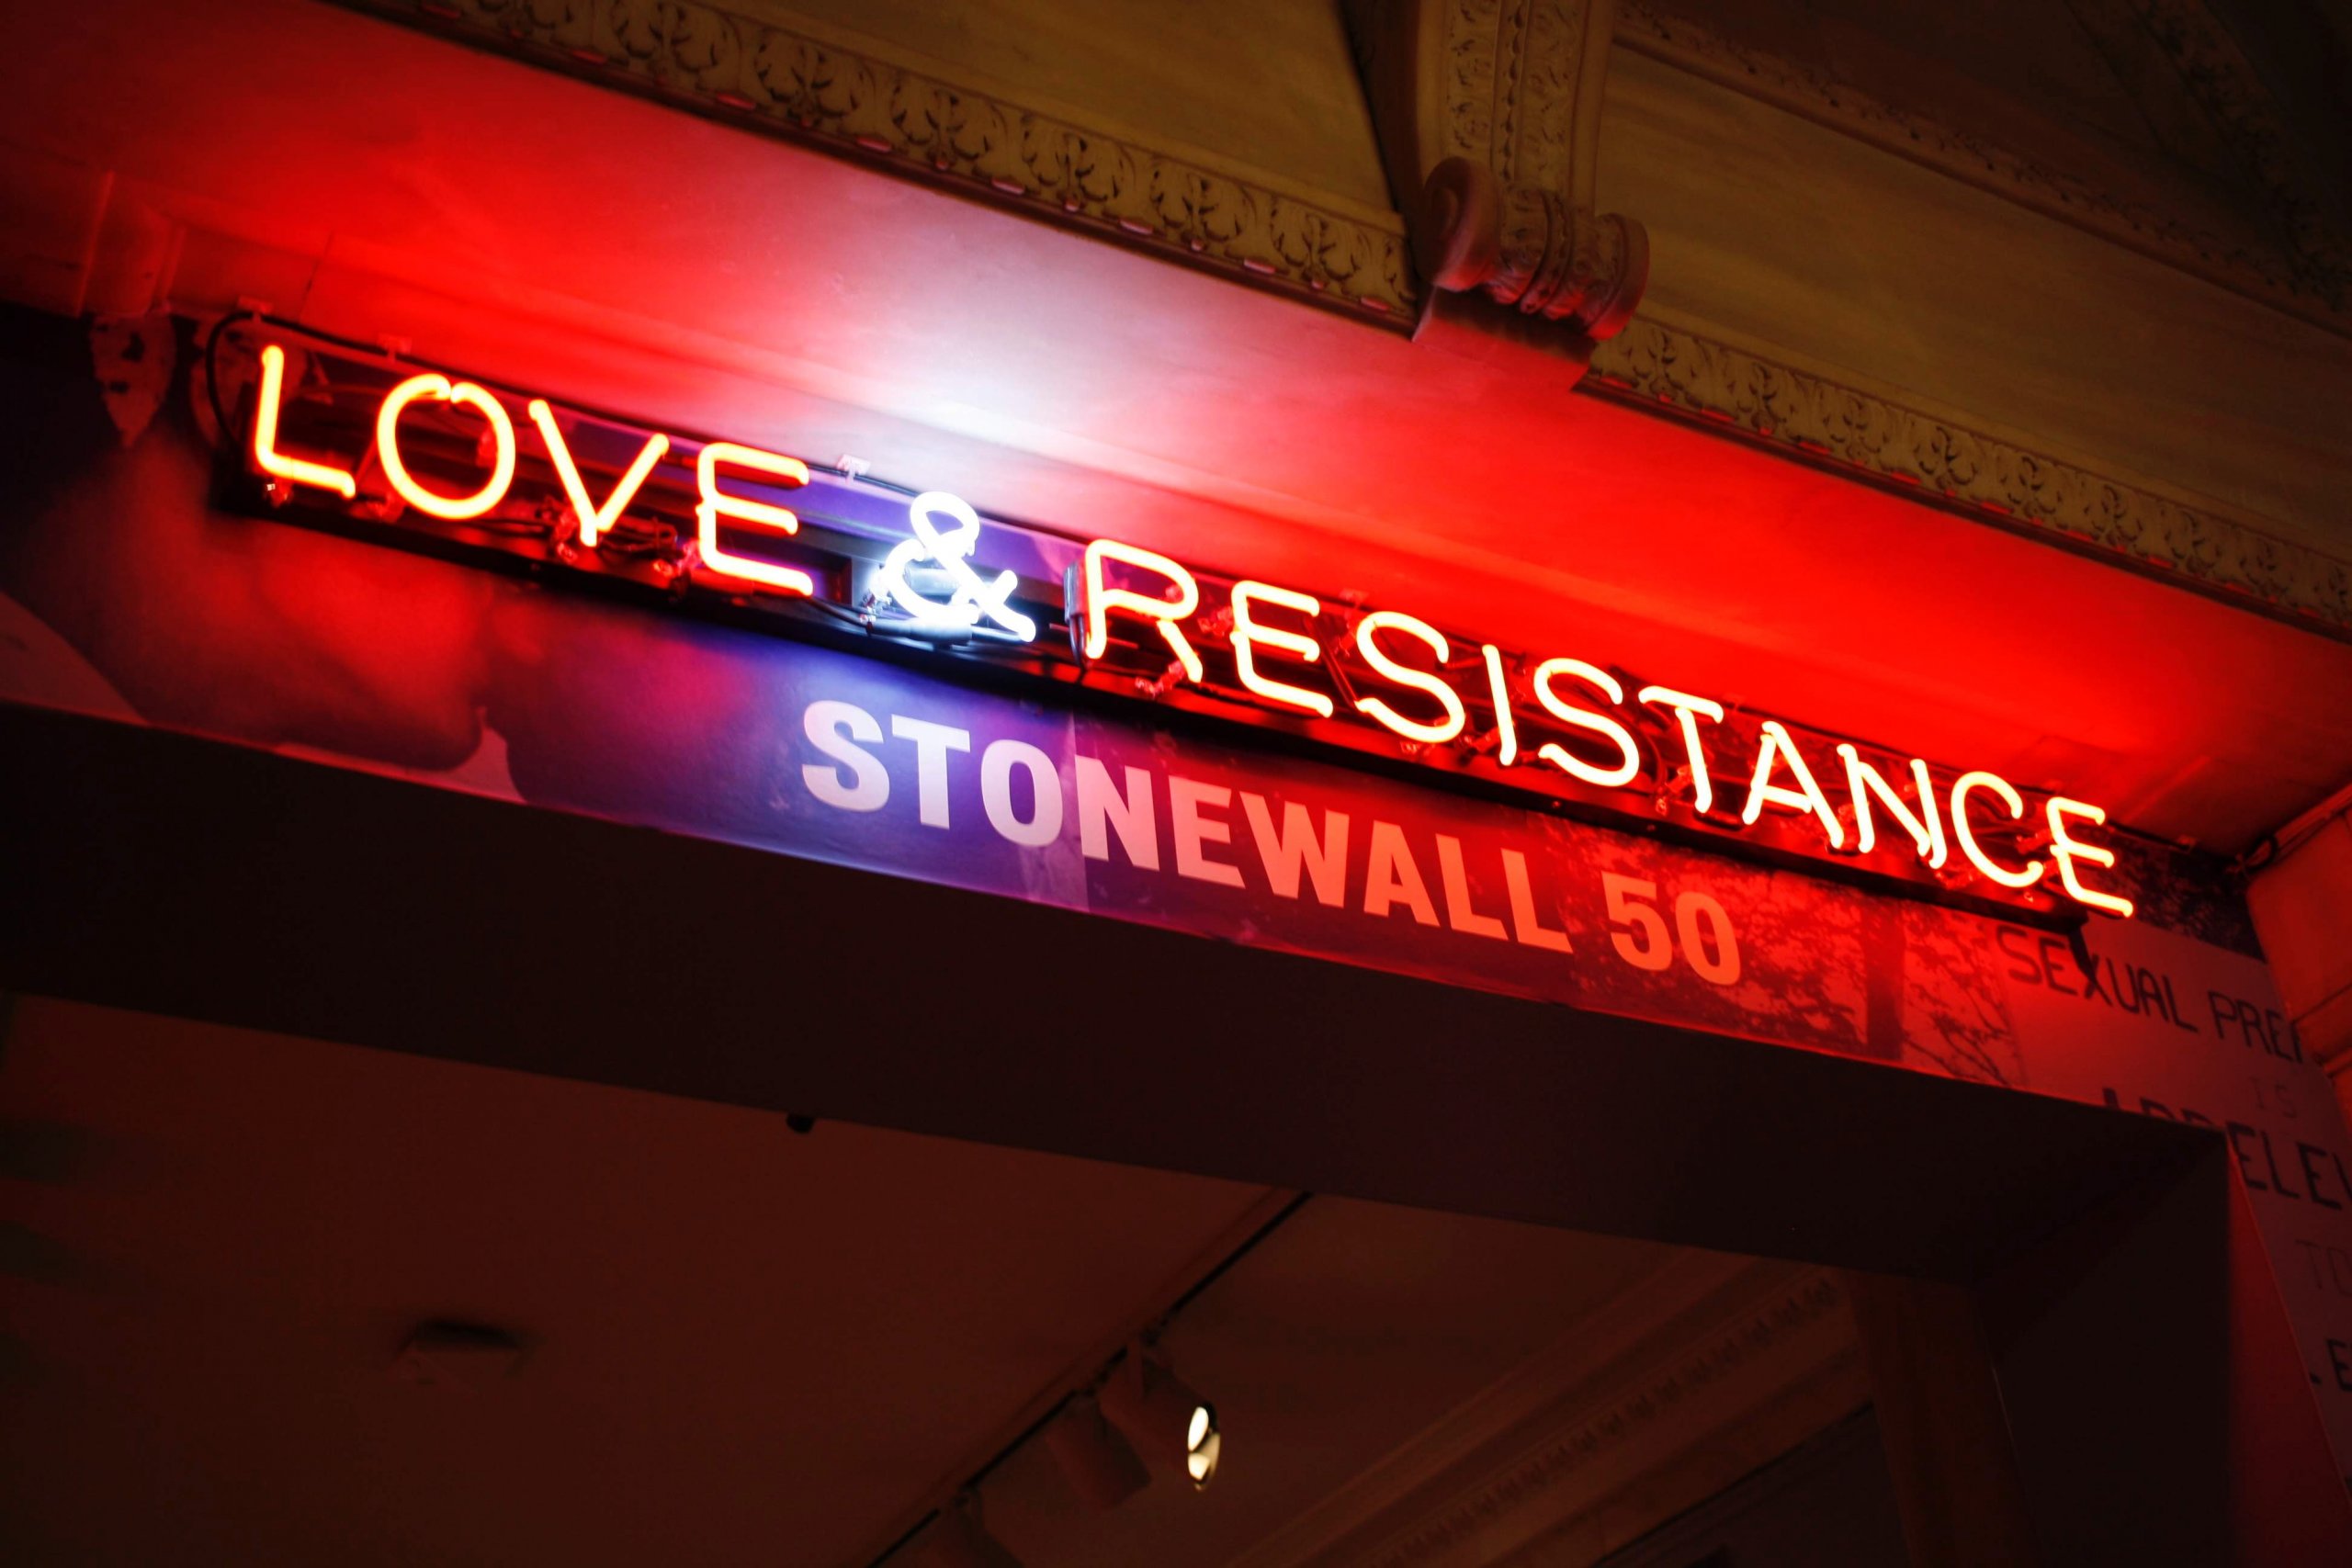 Stonewall, NY